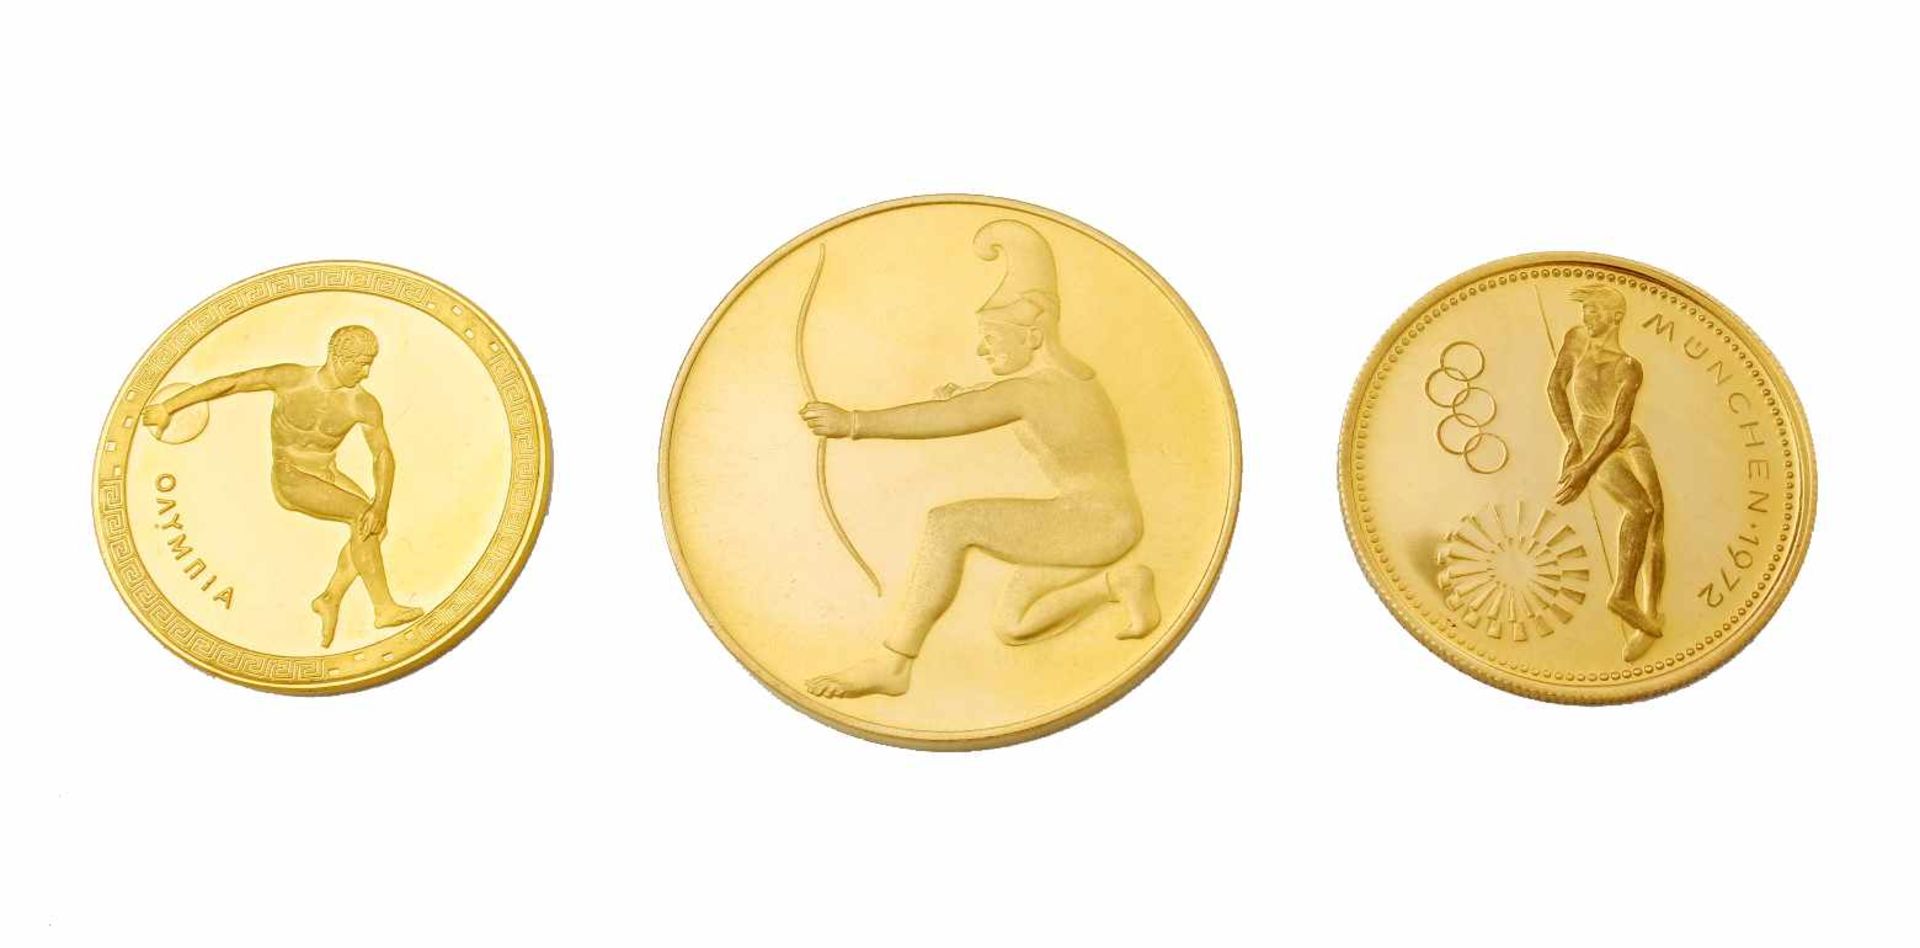 3 goldene Münzen/Medaillen zur Olympiade 1972 München1.) Aufschrift "Olympische Spiele 1972